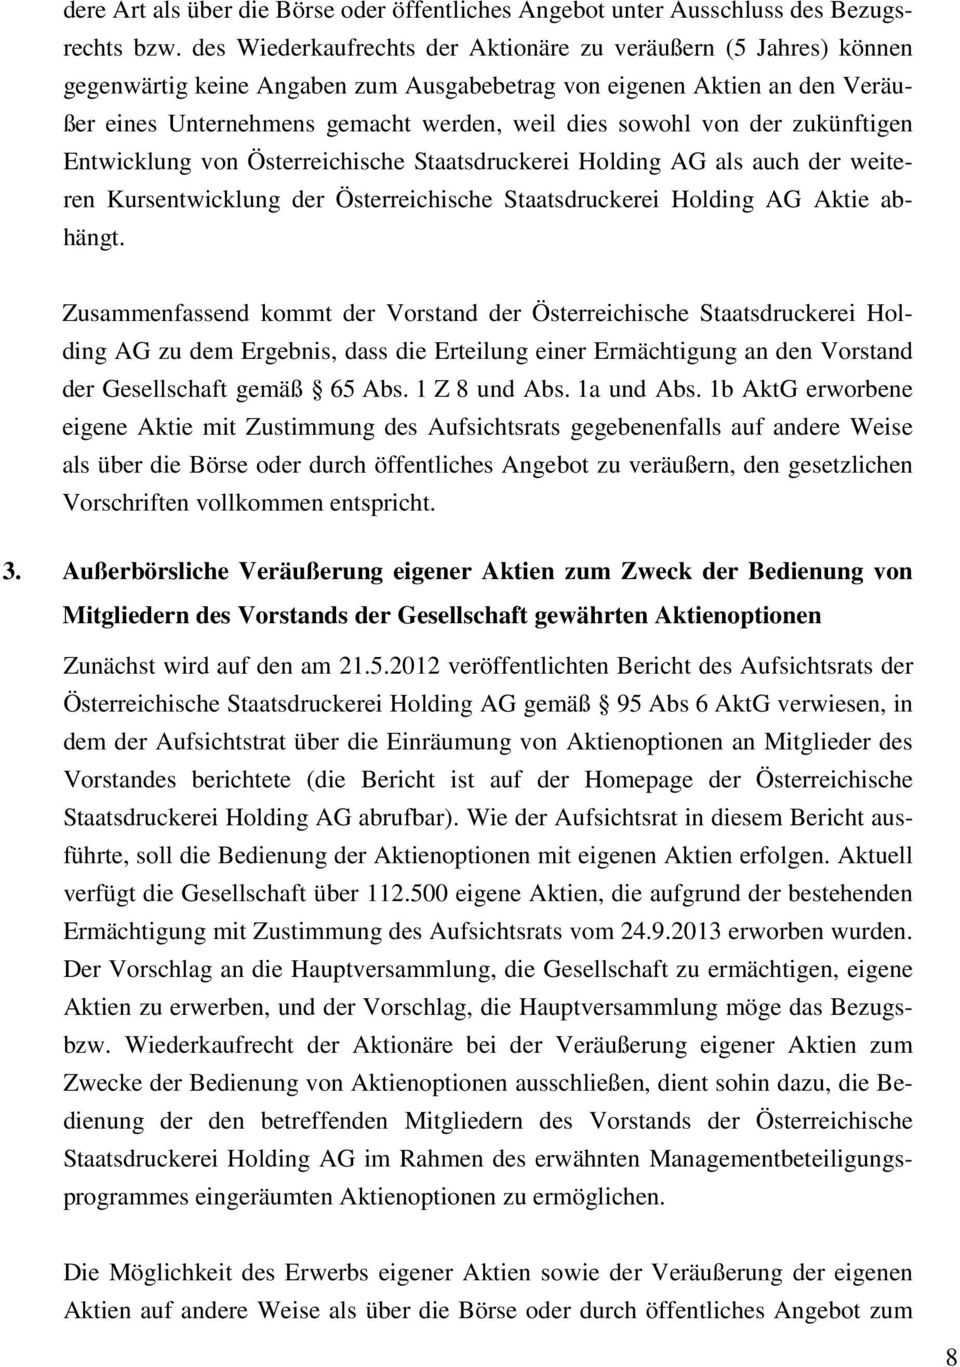 von der zukünftigen Entwicklung von Österreichische Staatsdruckerei Holding AG als auch der weiteren Kursentwicklung der Österreichische Staatsdruckerei Holding AG Aktie abhängt.